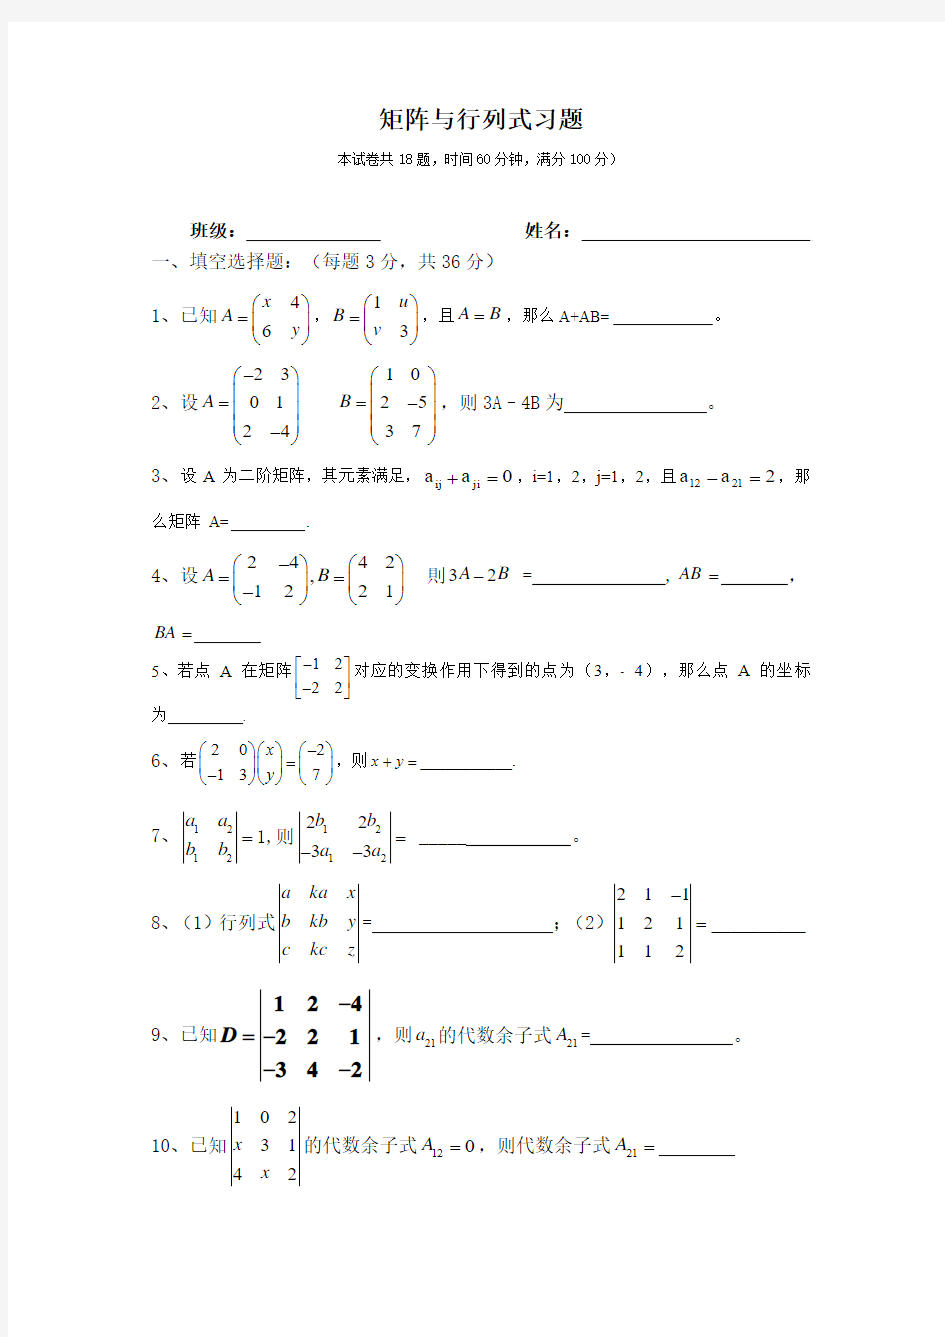 上海版矩阵与行列式基础练习题分析